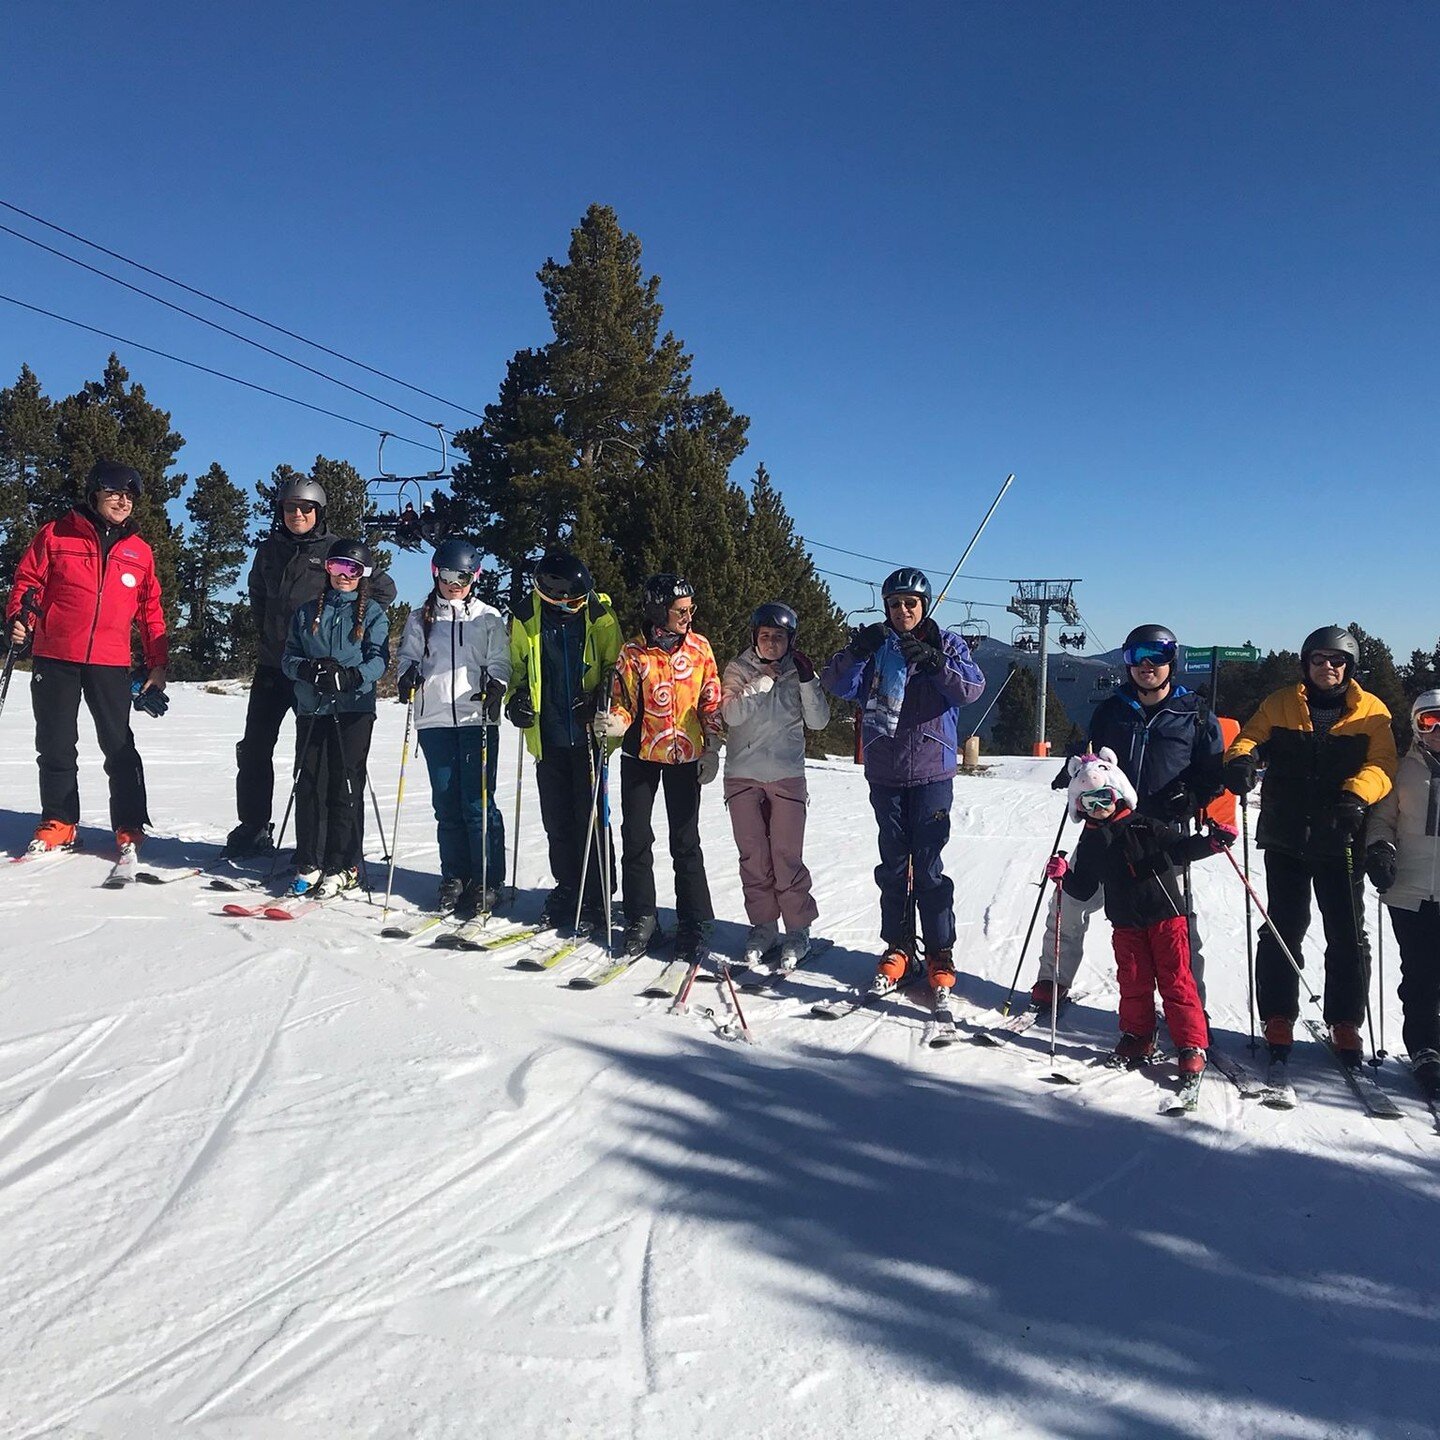 El cap de setmana passat el CNAM va anar a esquiar a Font Romeu! ❄

Un grup de m&eacute;s de 30 persones del Club es van reunir a la neu per passar una jornada molt divertida entre familiars i amics.

Gr&agrave;cies a tots per acompanyar-nos i ens ve